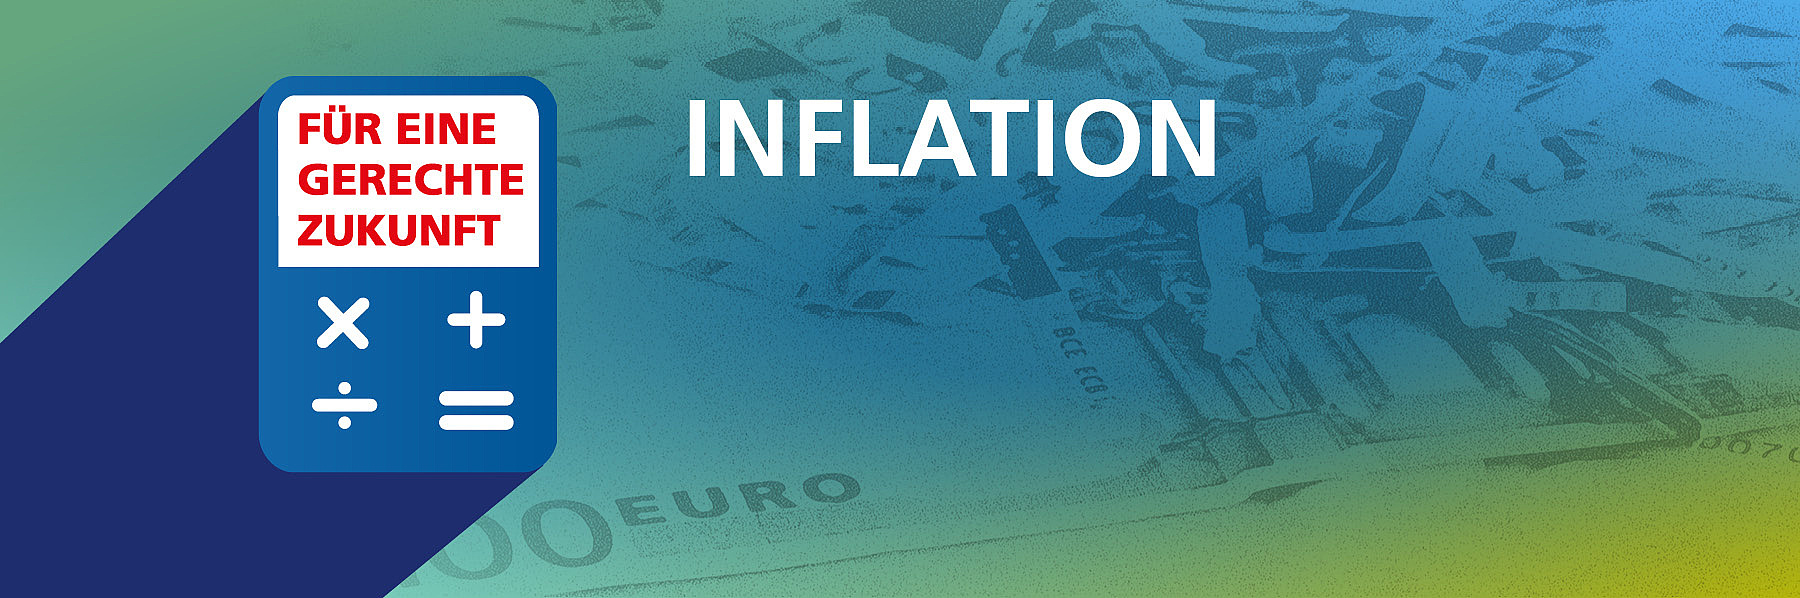 Blau-grün-gelb verwischter Hintergrund. Darauf der weiße Schriftzug "Inflation".